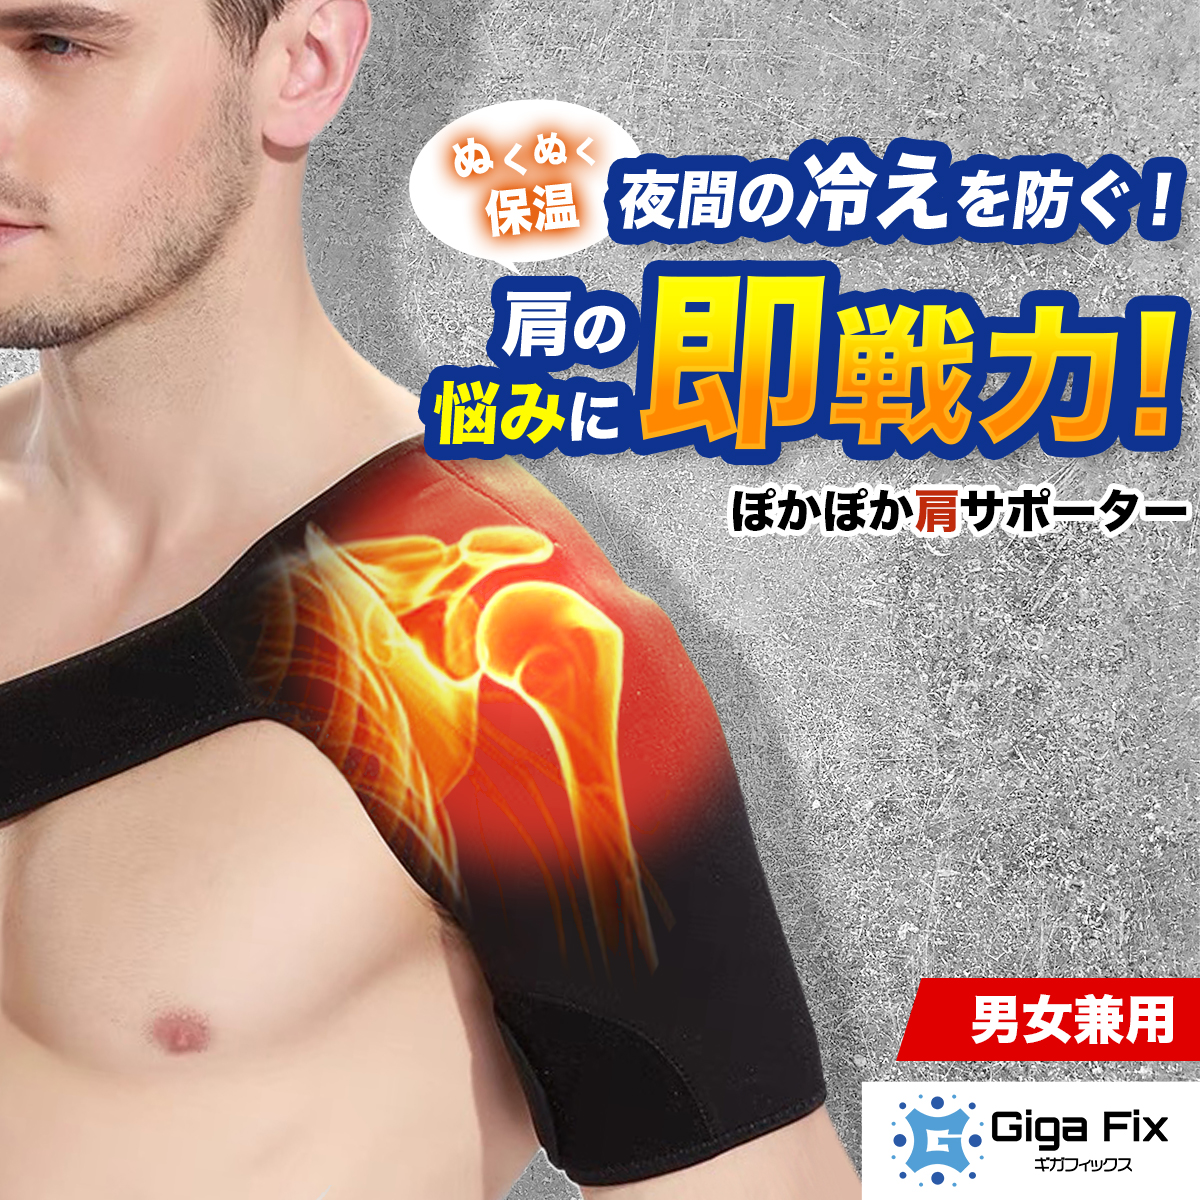  плечо опора "замороженное плечо" 4 10 плечо опора плечо медицинская помощь для теплоизоляция температура ... товары правый плечо левый плечо 